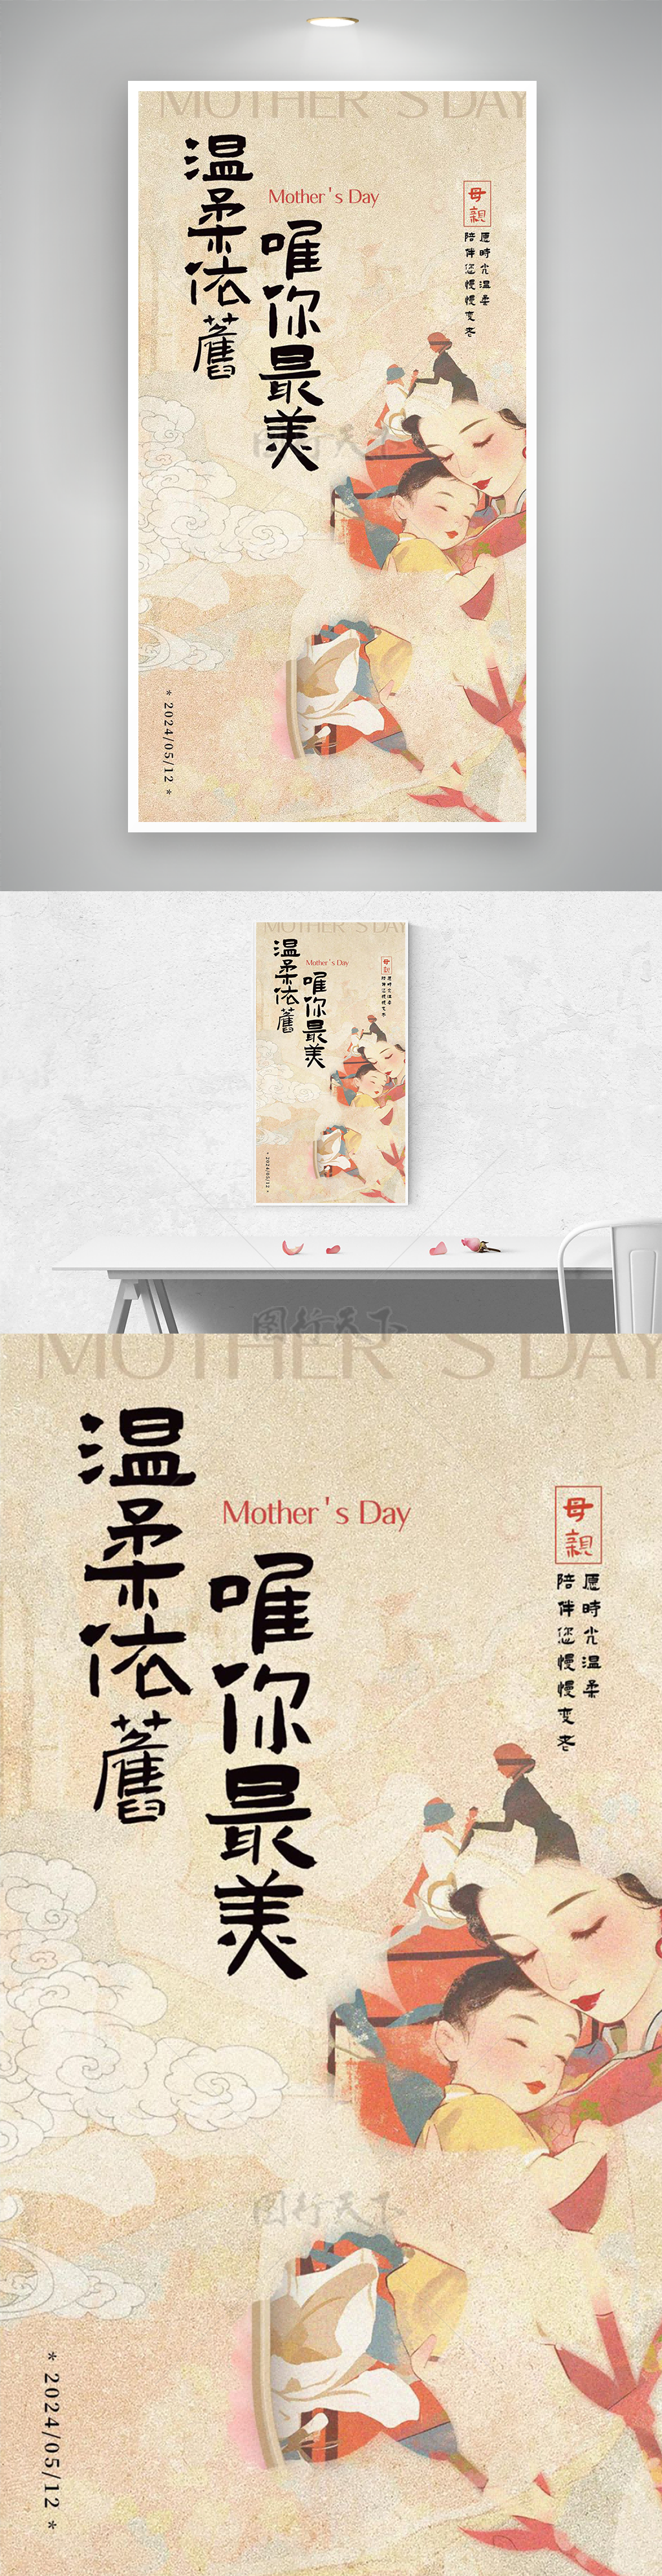 温柔依偎母子民国母亲节主题海报